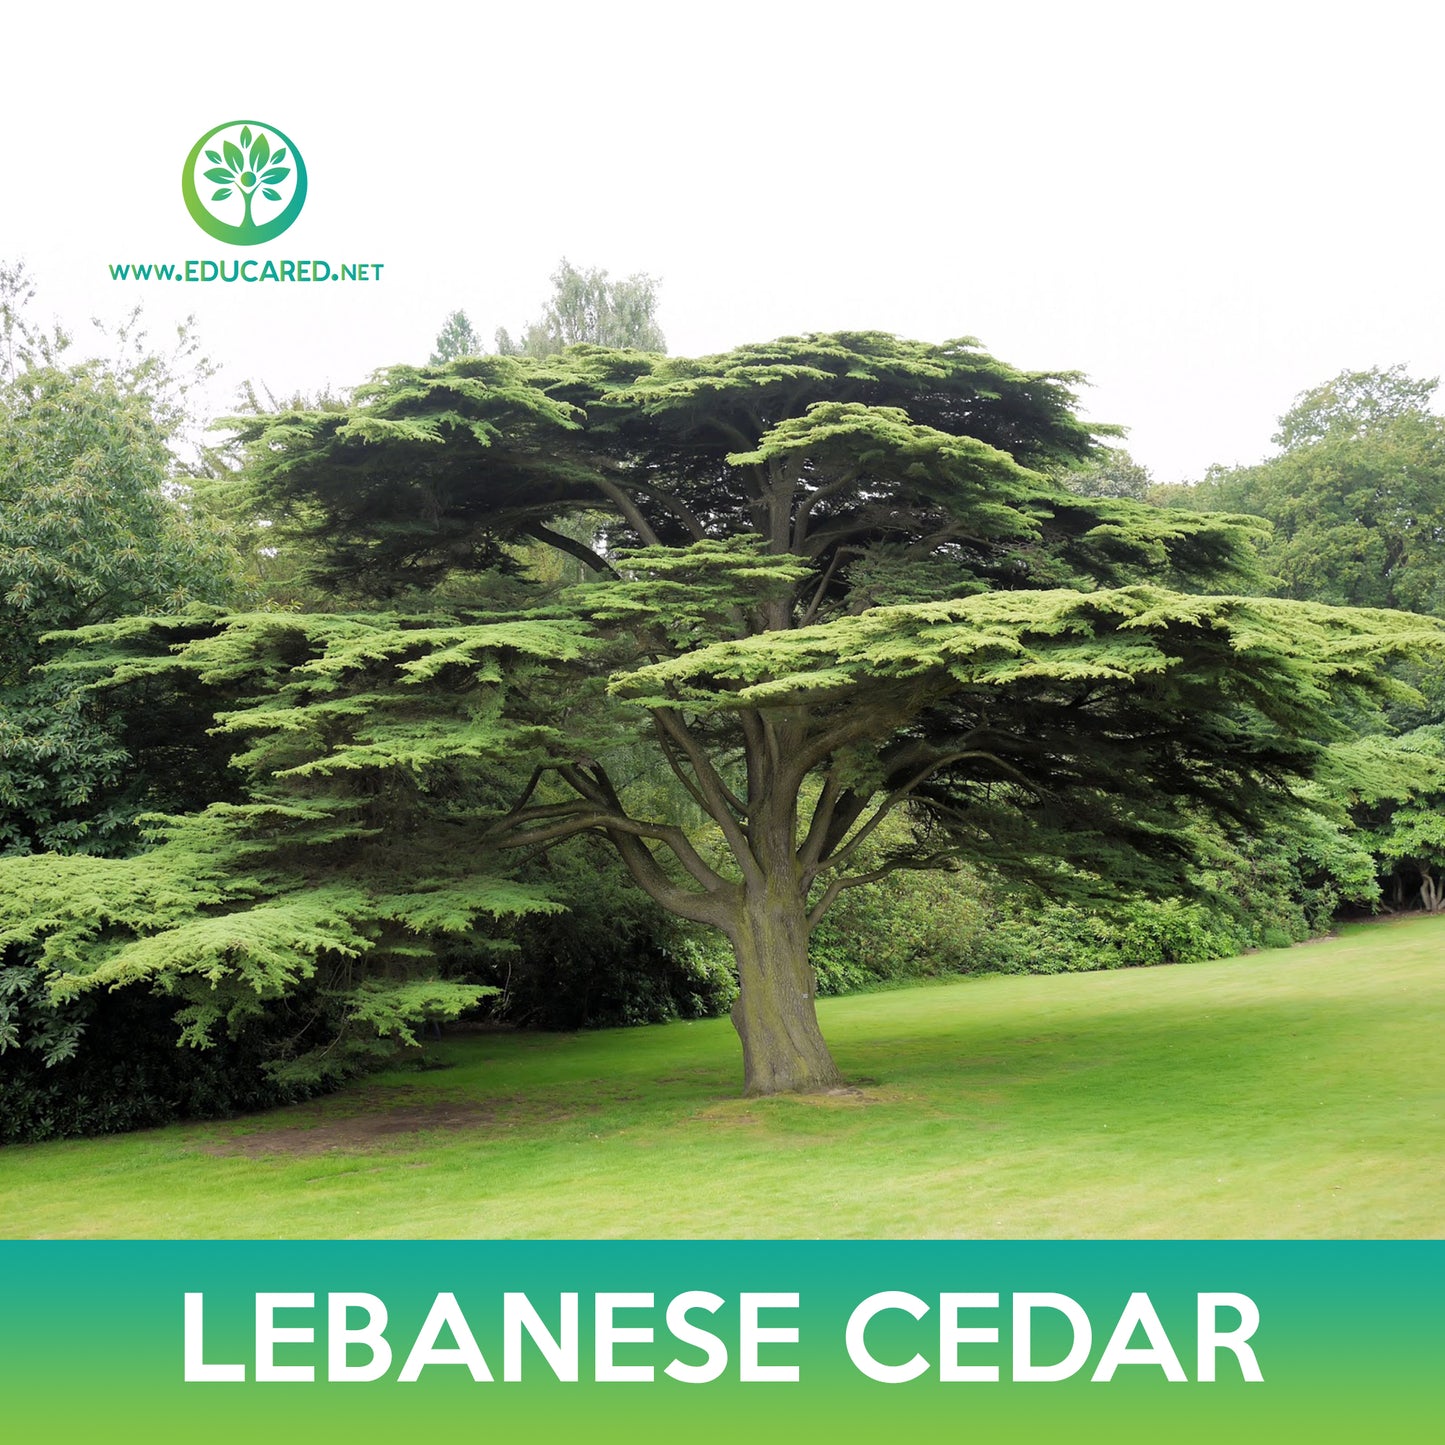 Lebanese Cedar Tree Seeds, Cedrus libani